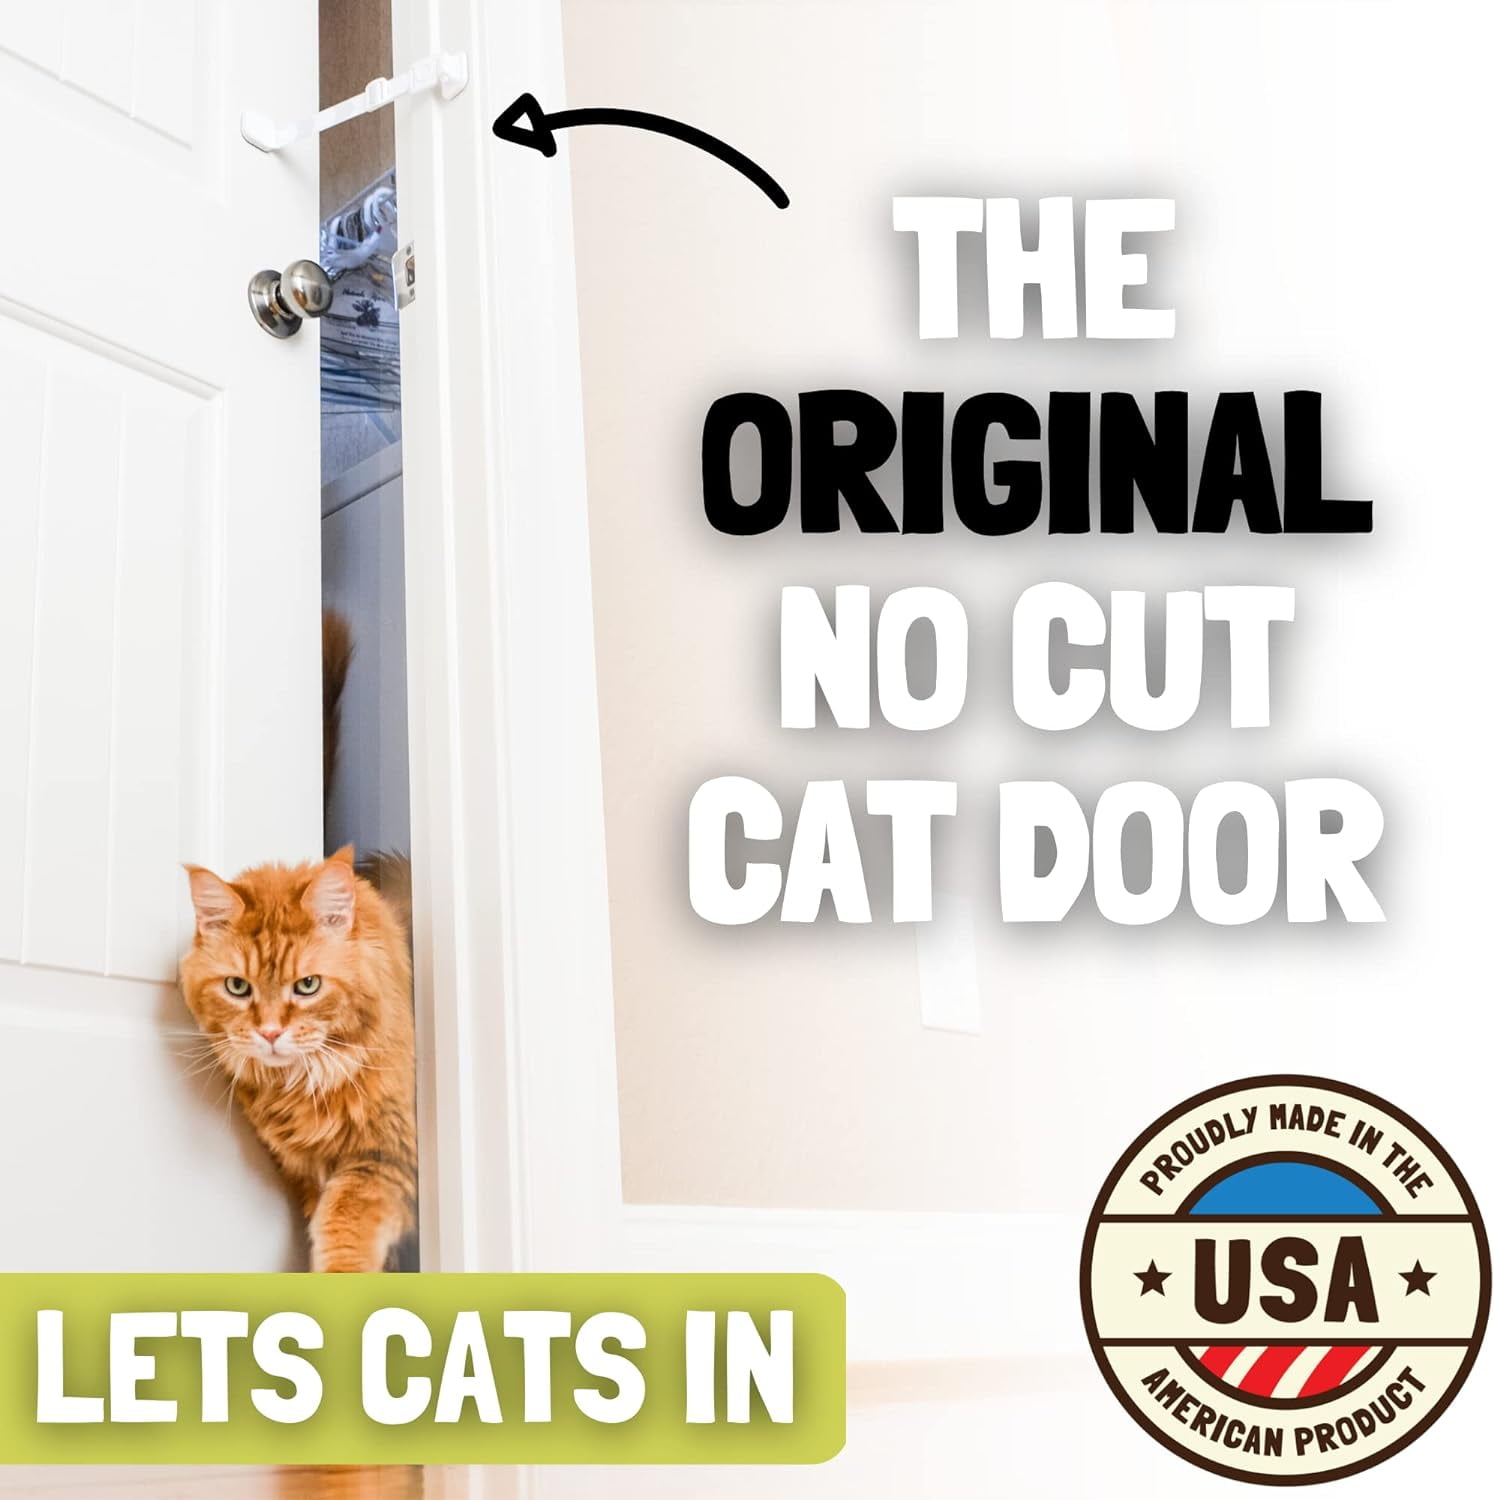 Adjustable Door Strap, Door Locks for Kids Safety & Cat Door Latch – Inaya